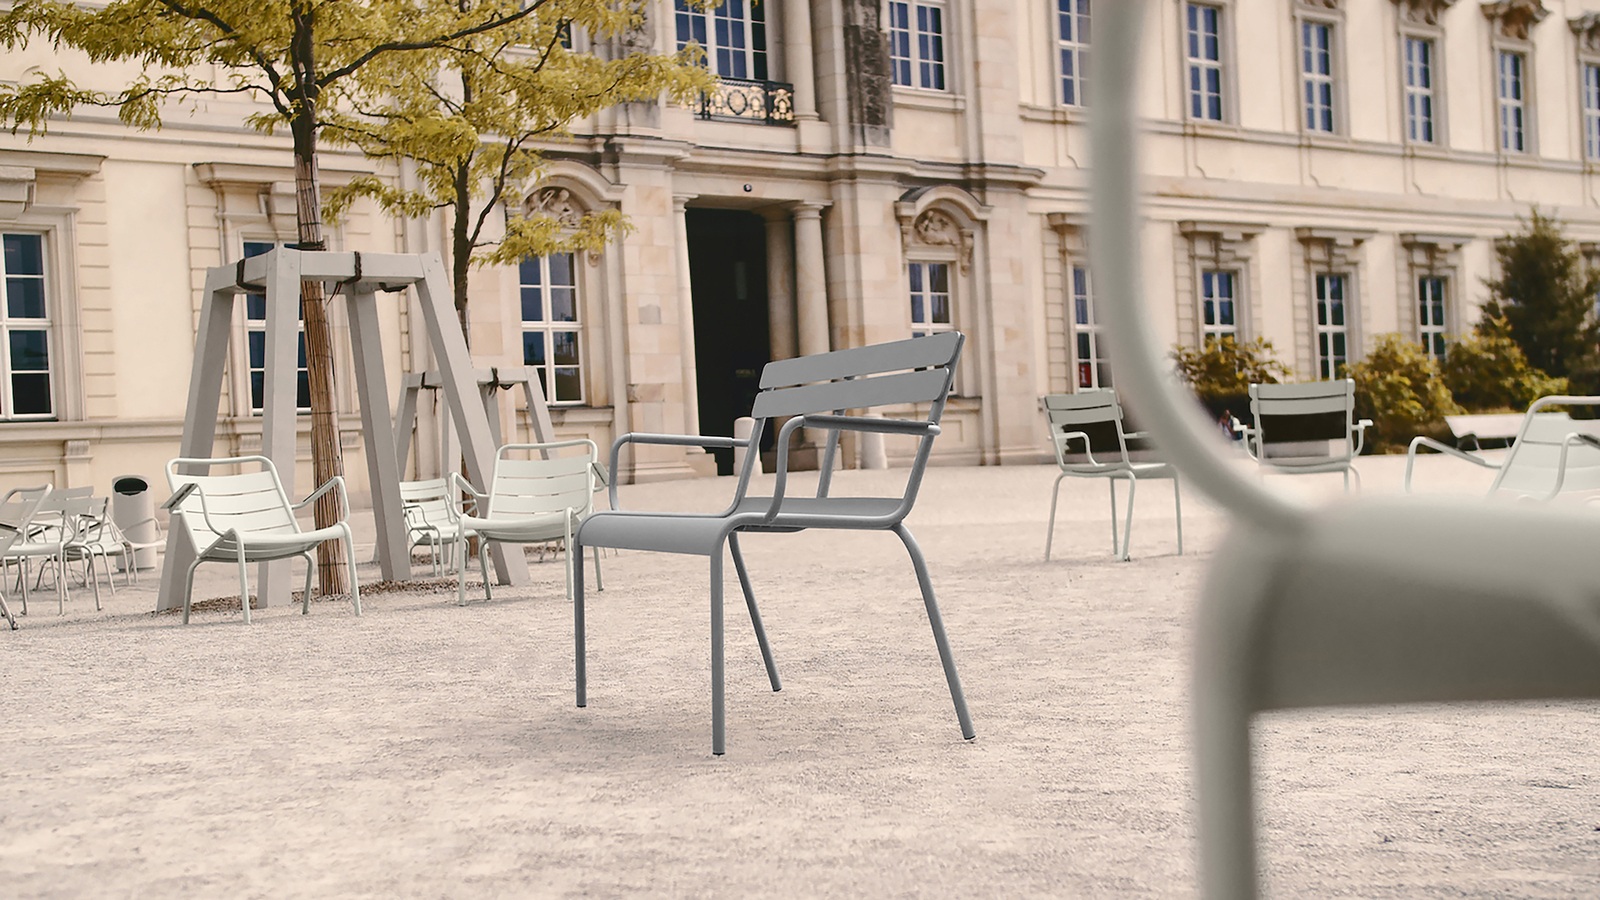 Objekt der Begierde: Luxembourg Stuhl von fermob